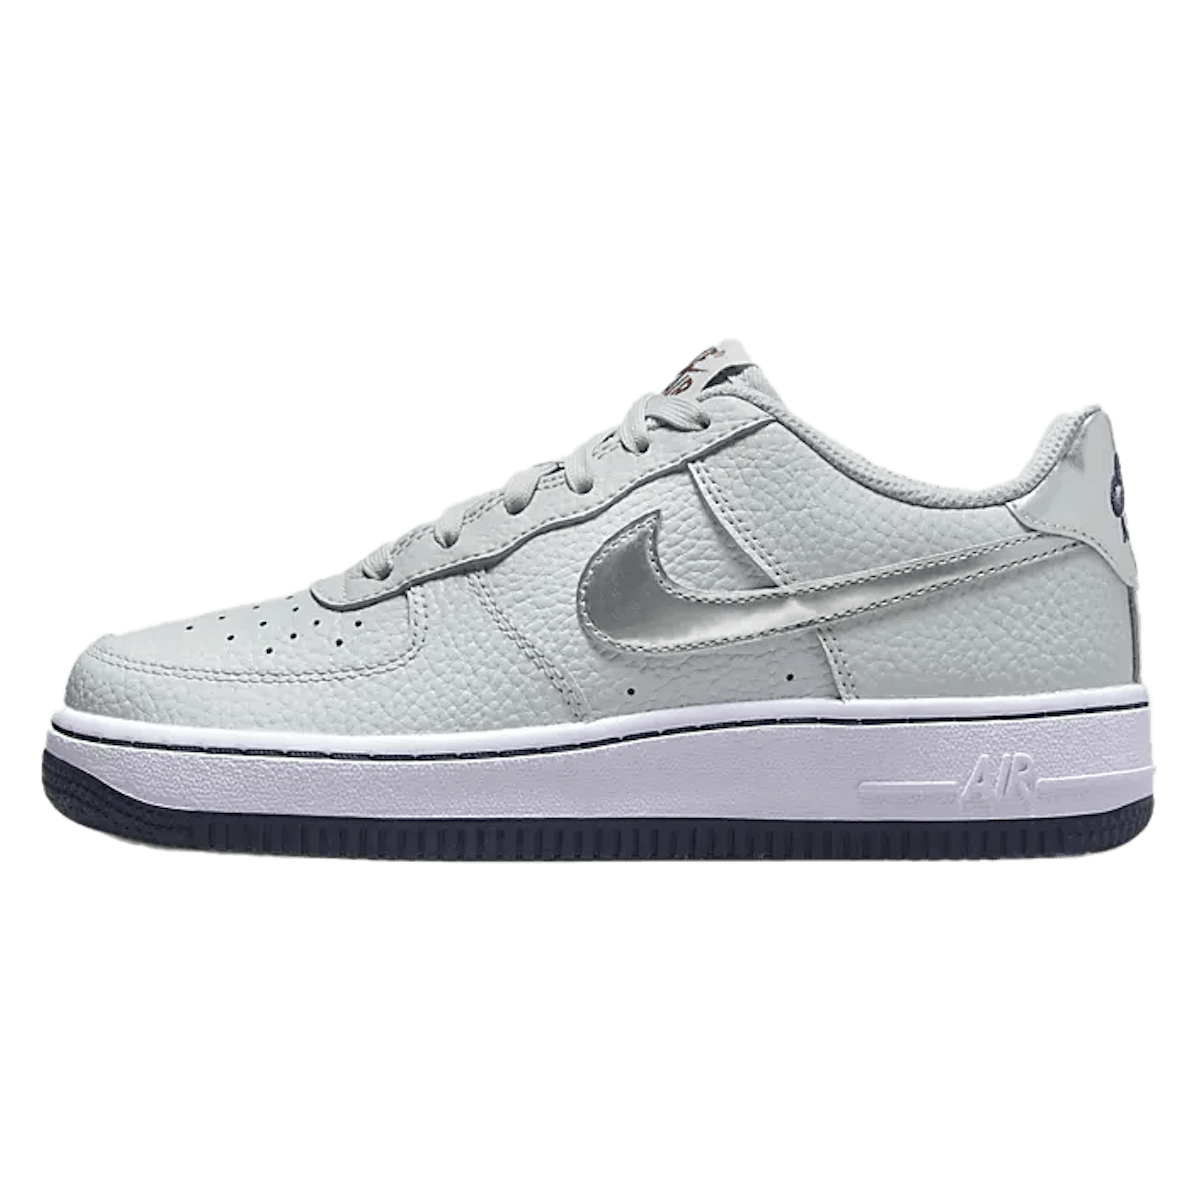 Nike Air Force 1 GS "Metallic Silver"